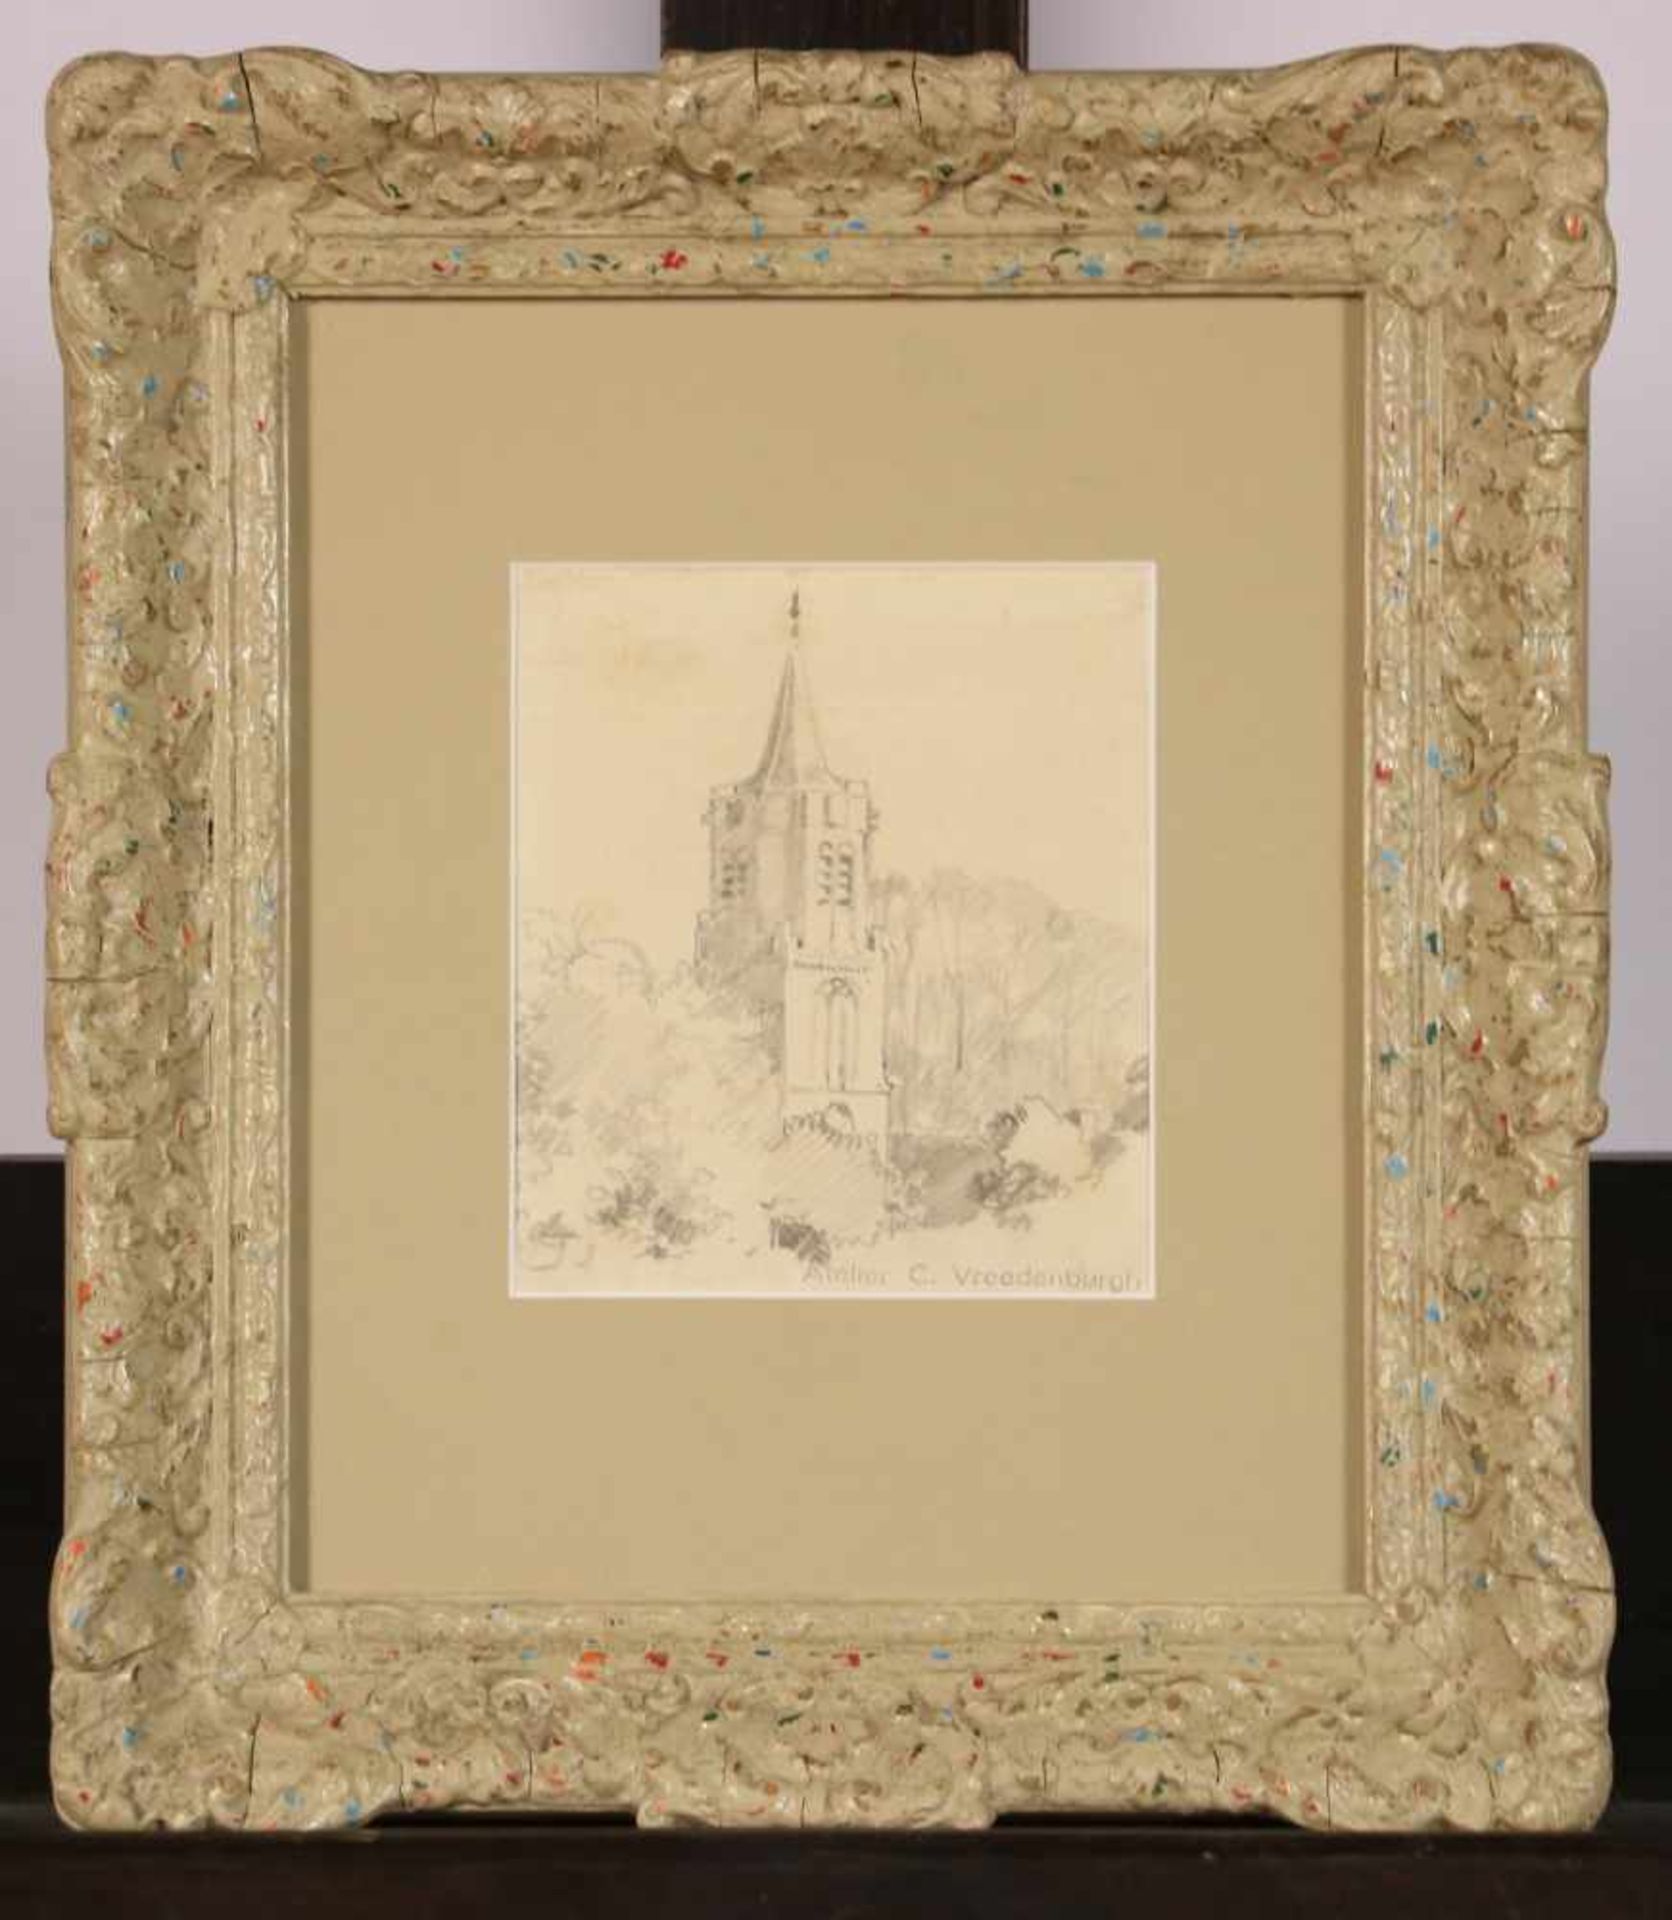 Cornelis Vreedenburgh (Woerden 1880 - 1946 Laren).Een kerktoren te Laren - een schets. Potlood op